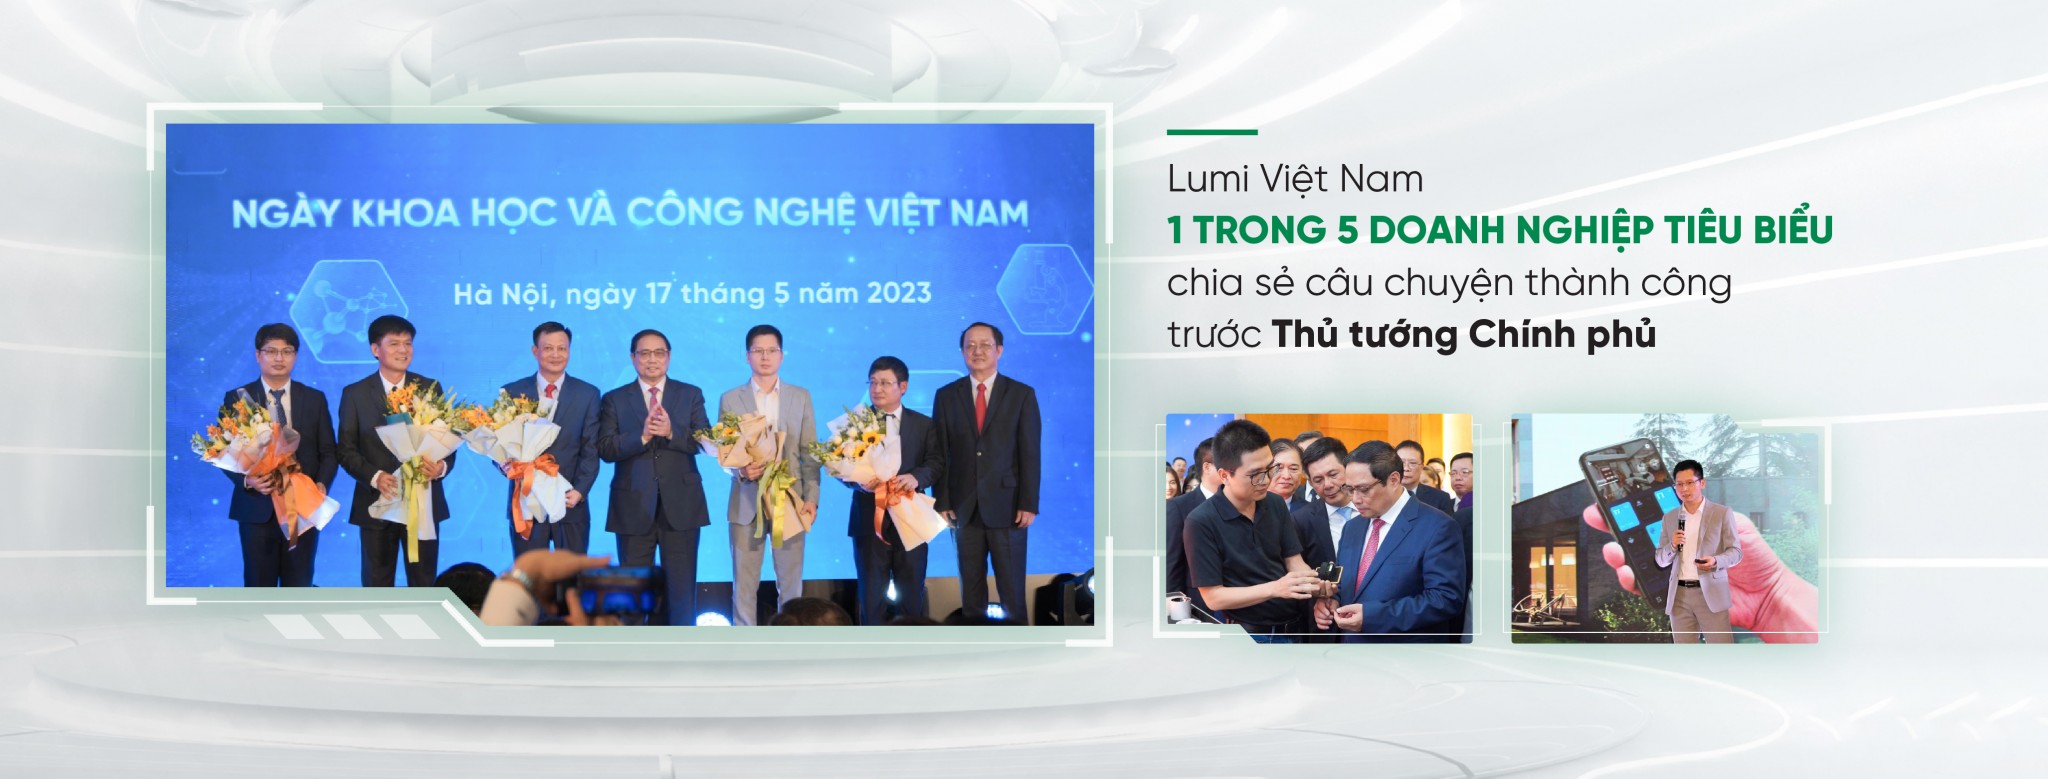 Lumi tại ngày khoa học và công nghệ Việt Nam